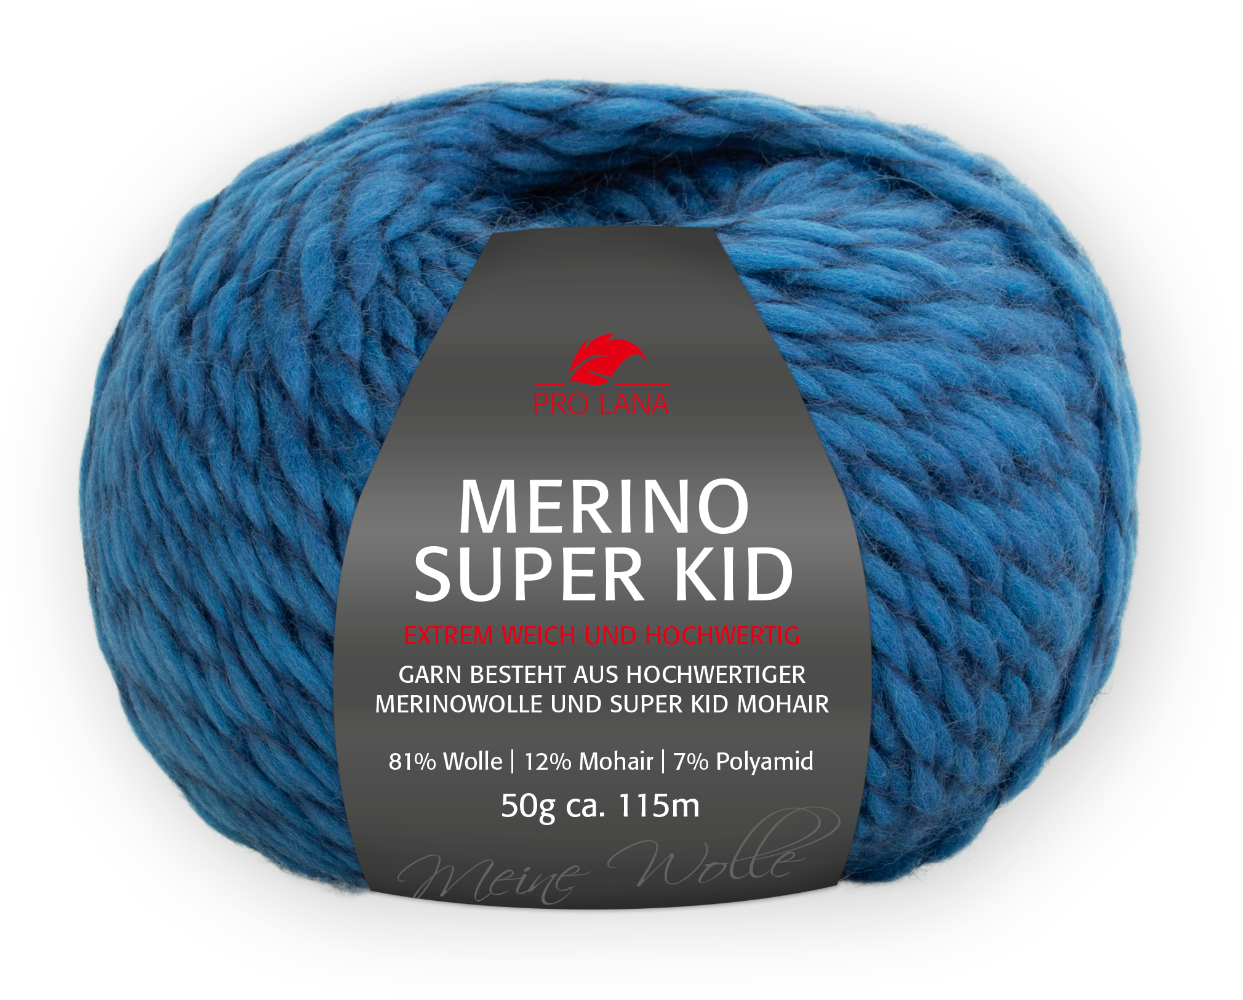 Merino Super Kid von Pro Lana 0154 - royal meliert